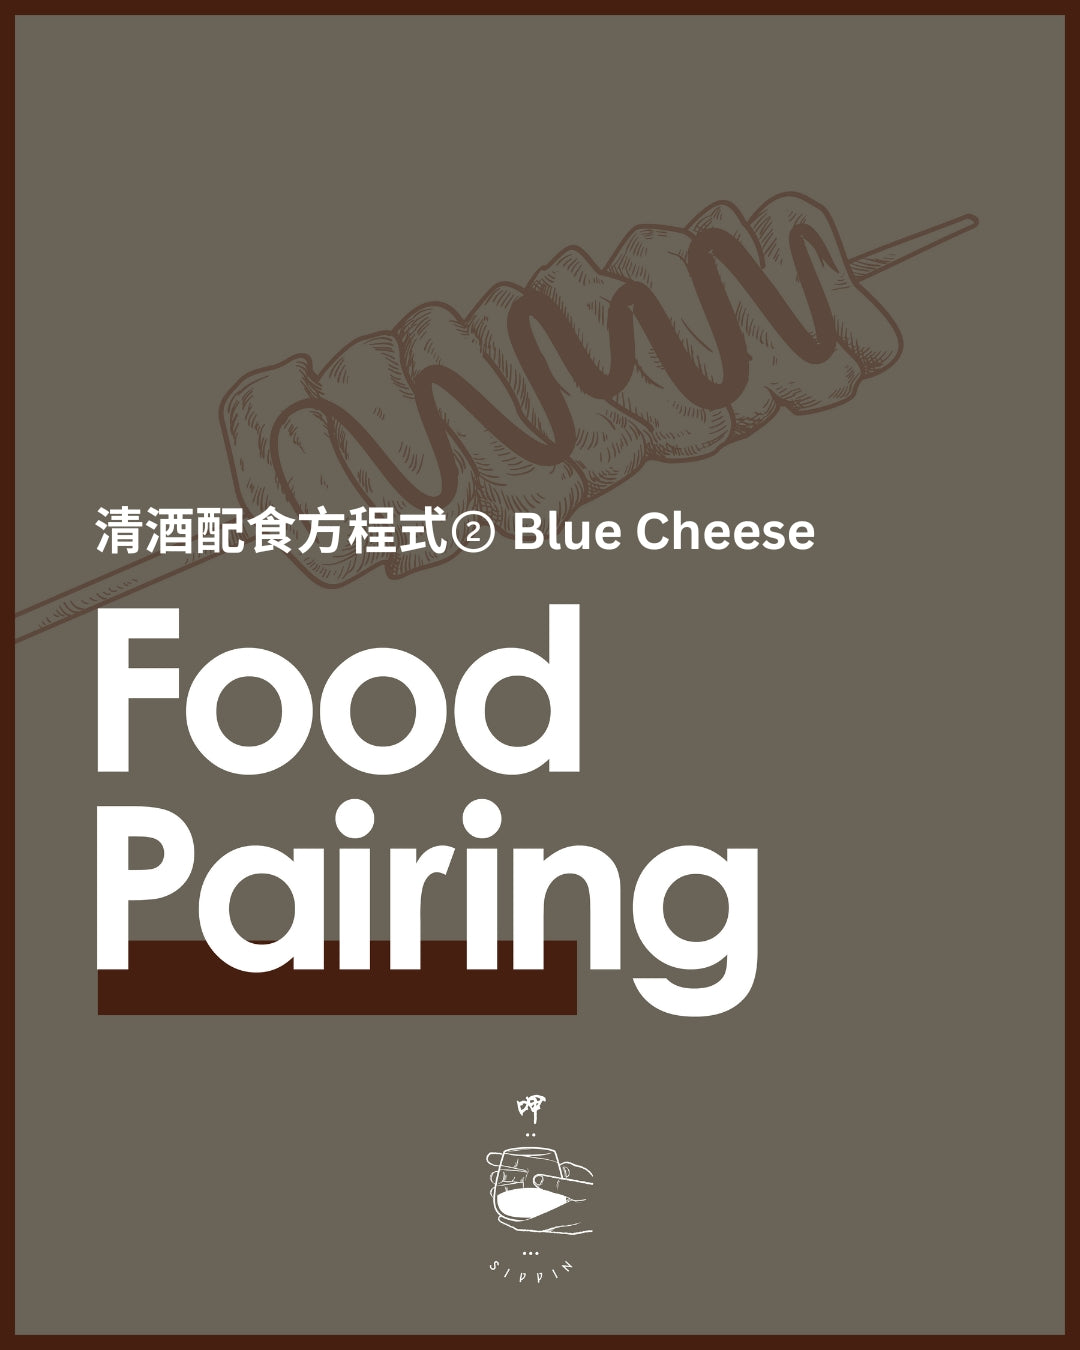 清酒配食方程式② Blue Cheese配熟成清酒